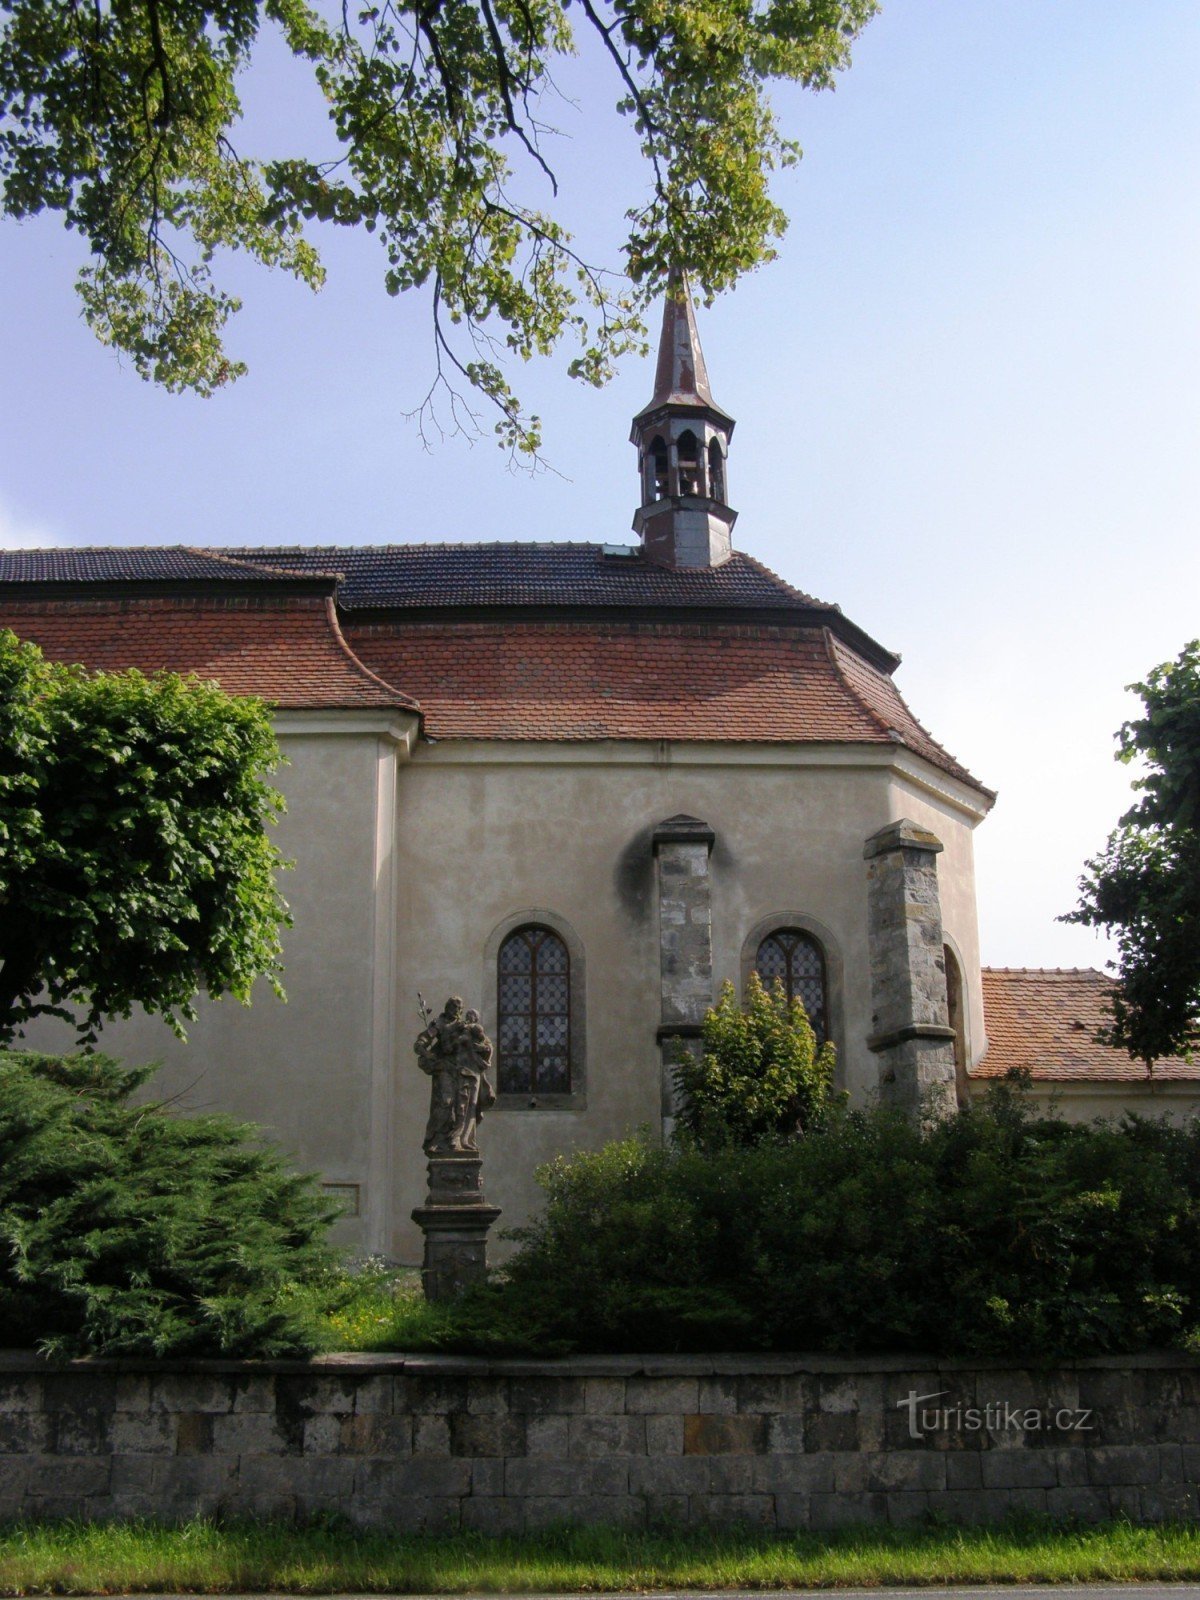 Libuň - Kyrkan St. Martin